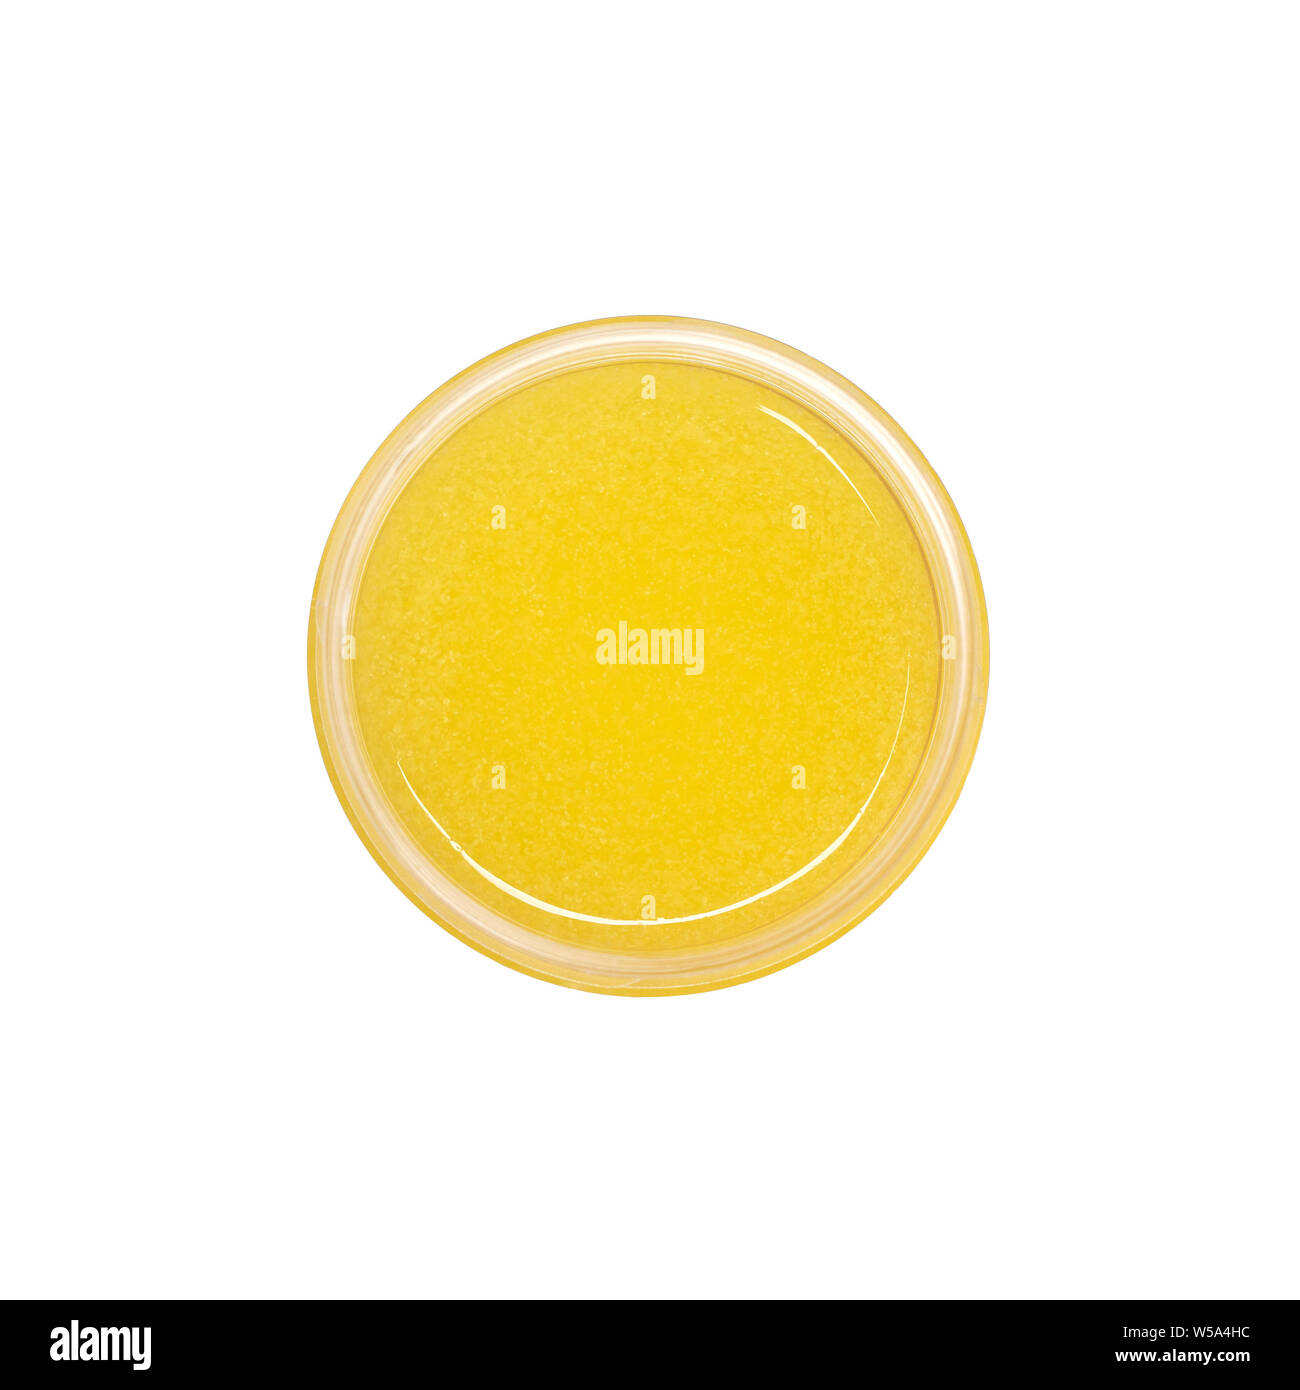 Gelbe Duschgel peeling Container auf weißem Hintergrund von oben Ansicht isoliert. Zuckerpaste. Stockfoto